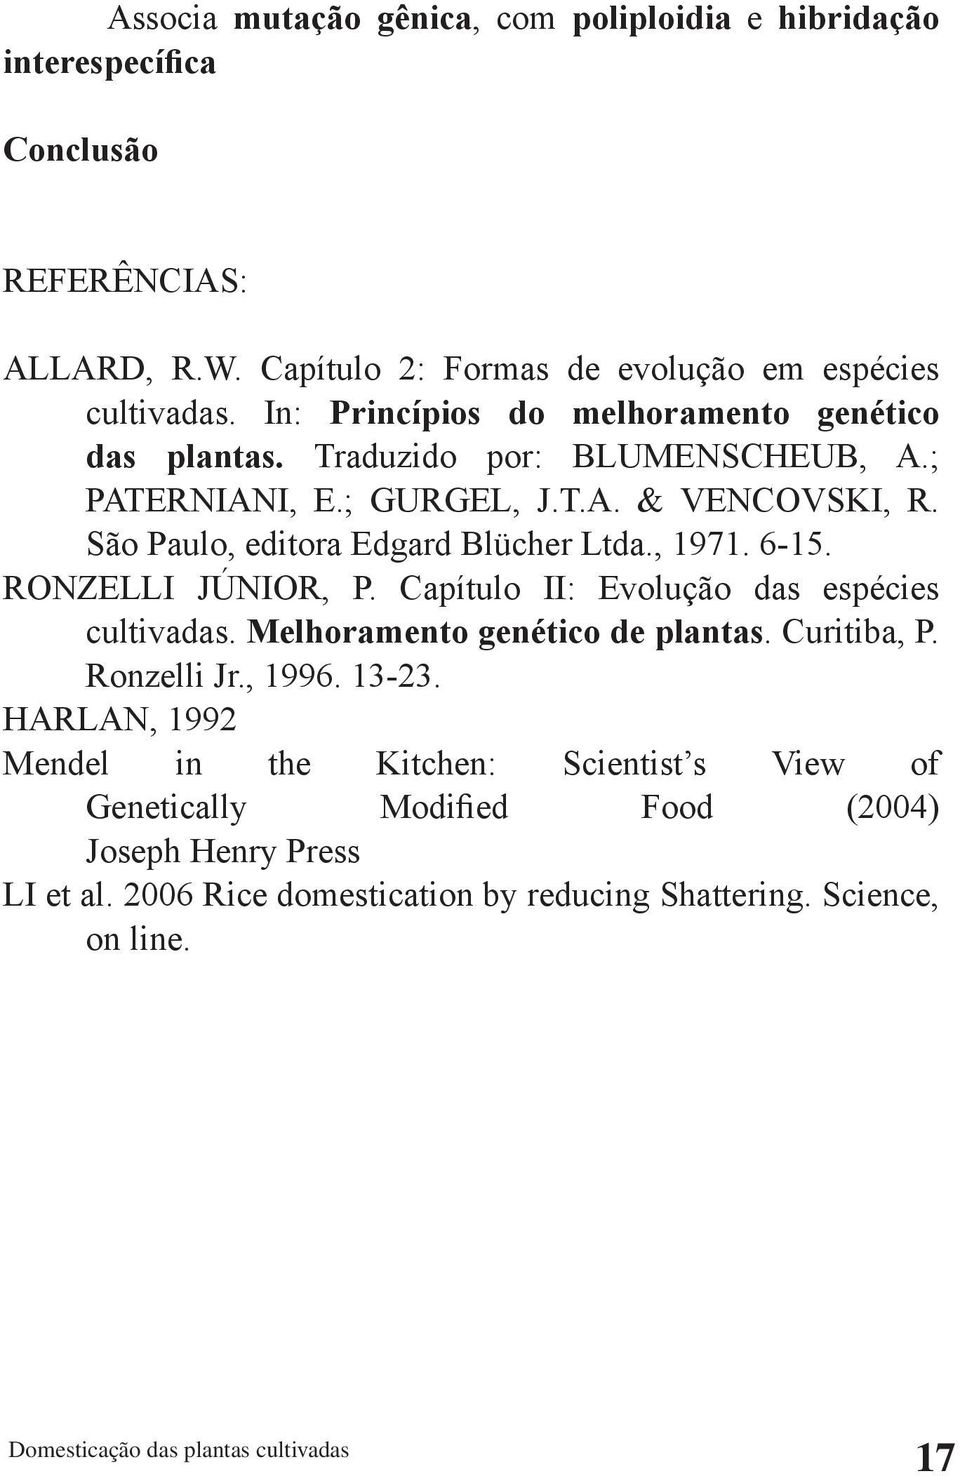 São Paulo, editora Edgard Blücher Ltda., 1971. 6-15. RONZELLI JÚNIOR, P. Capítulo II: Evolução das espécies cultivadas. Melhoramento genético de plantas. Curitiba, P.